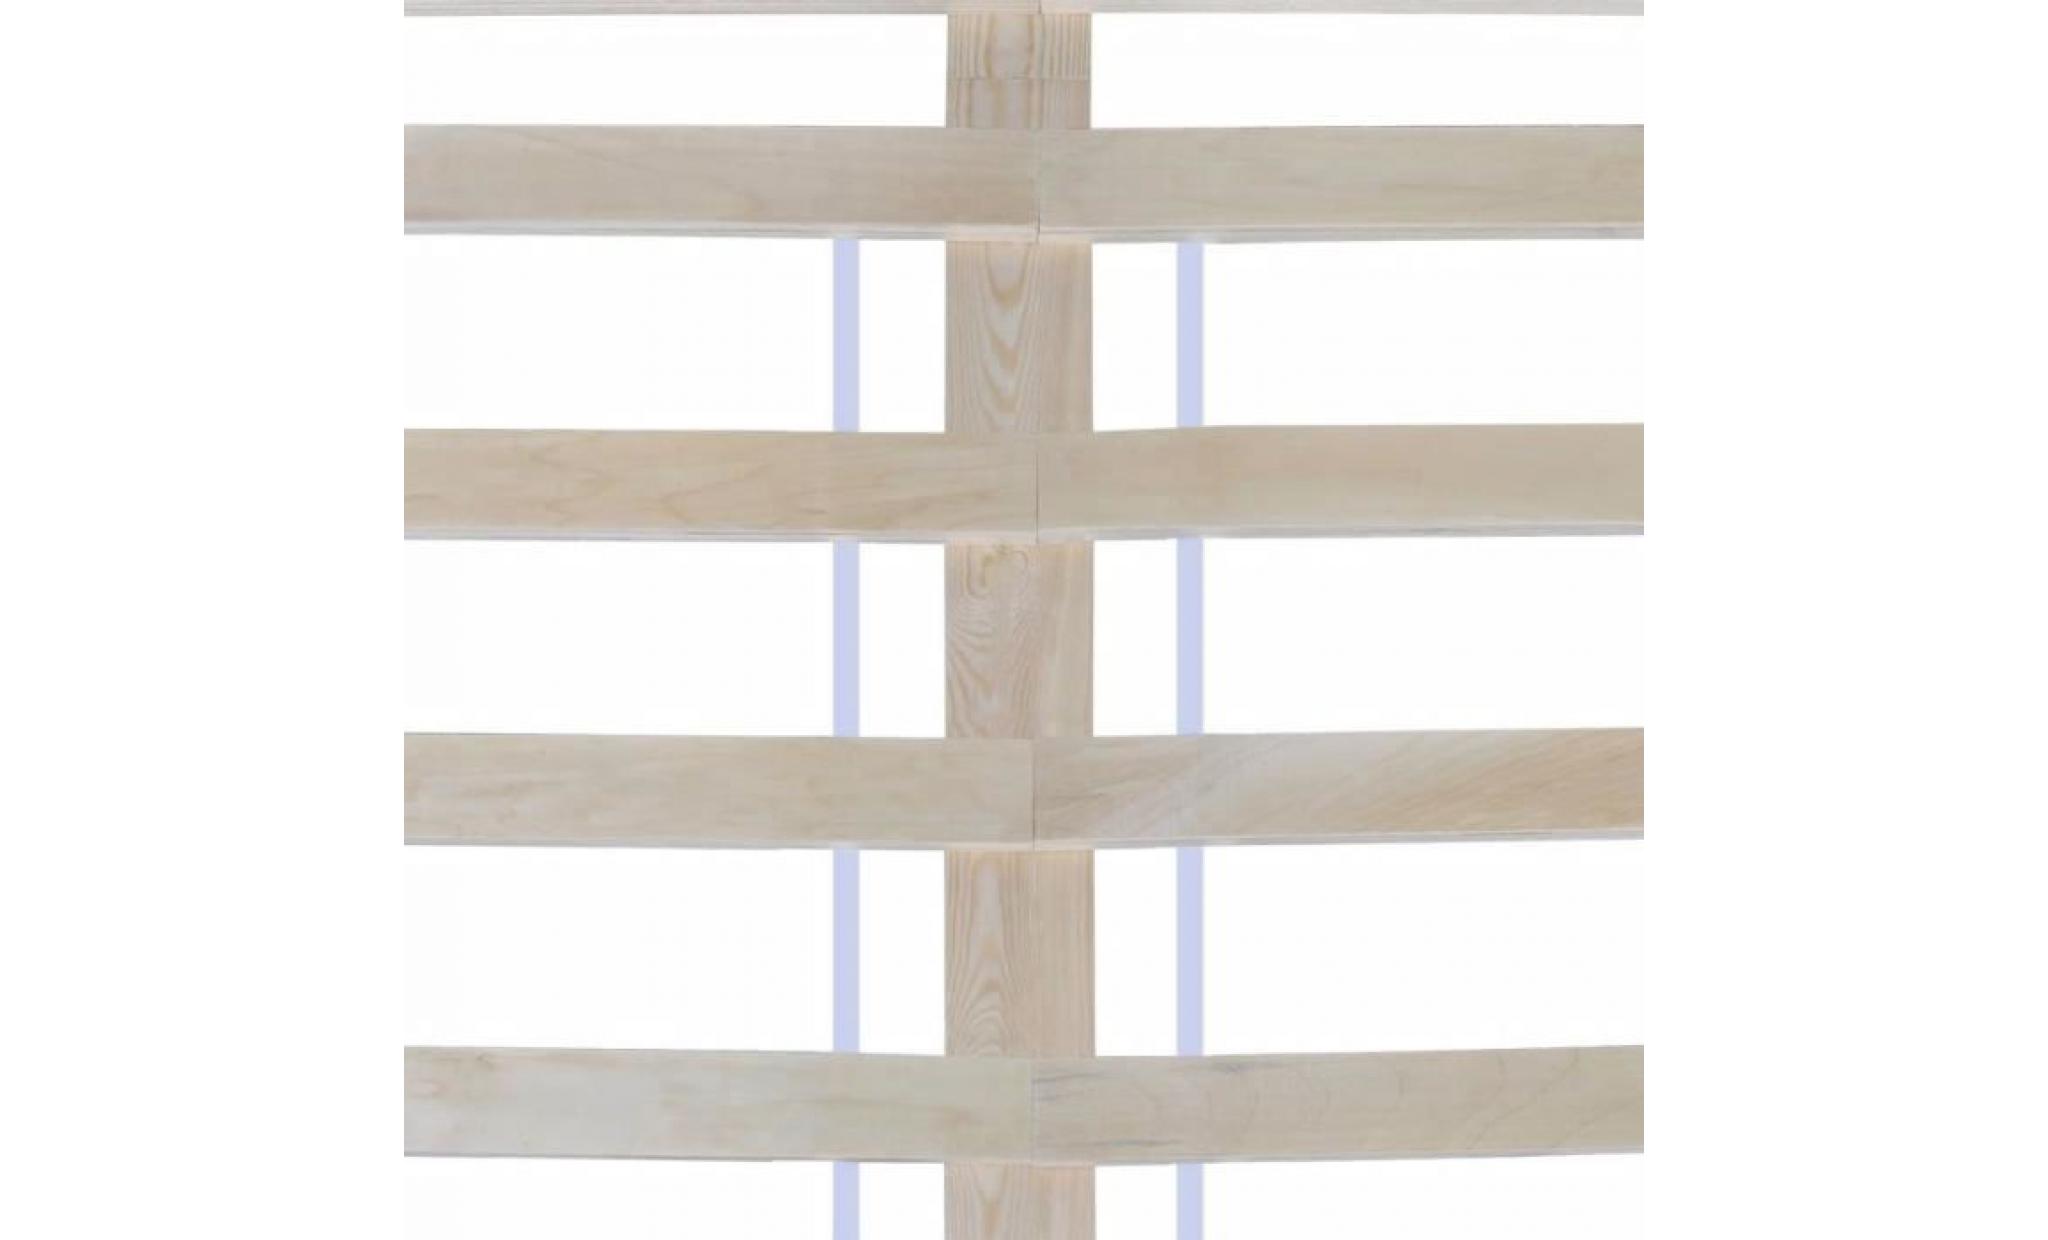 lit bois de pin massif 160 x 200 cm lit adulte lit enfant structure de lit contemporain scandinave blanc pas cher